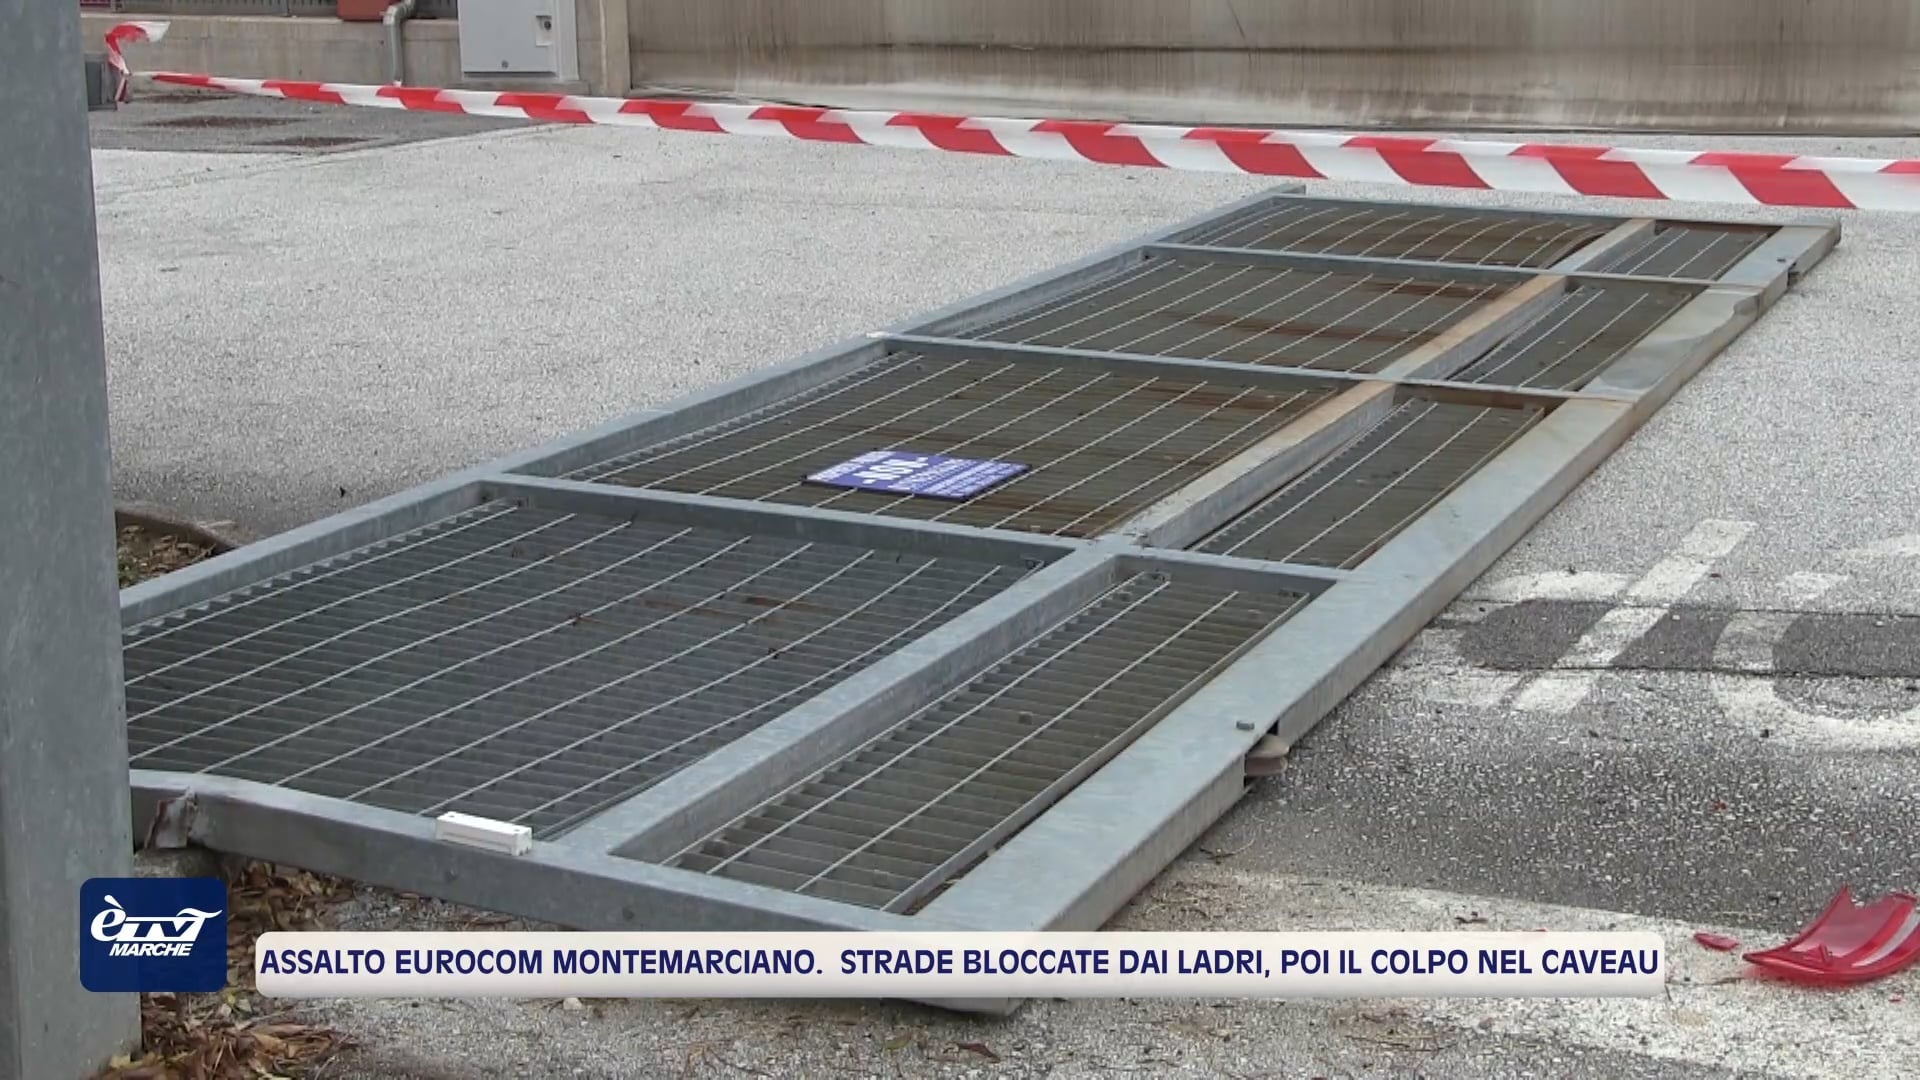 Assalto Eurocom Montemarciano. Strade bloccate dai ladri, poi il colpo nel caveau - VIDEO